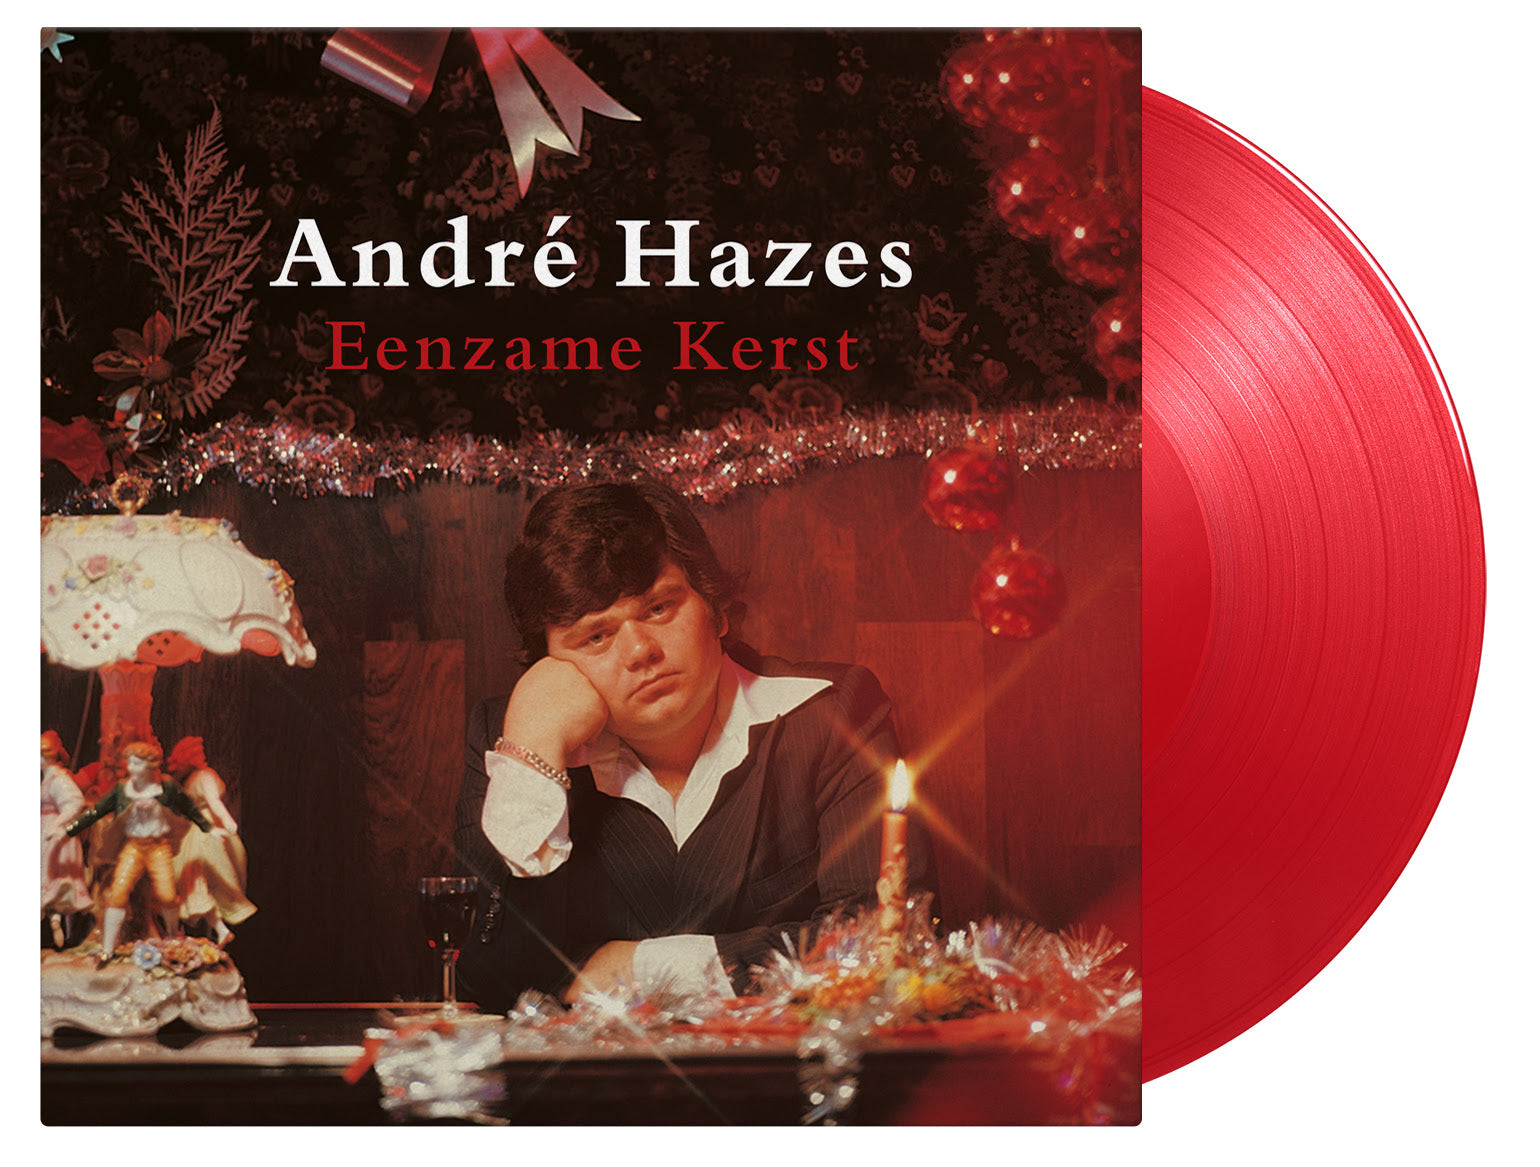 Andre Hazes - Eenzame Kerst  |  Vinyl LP | Andre Hazes - Eenzame Kerst  (LP) | Records on Vinyl